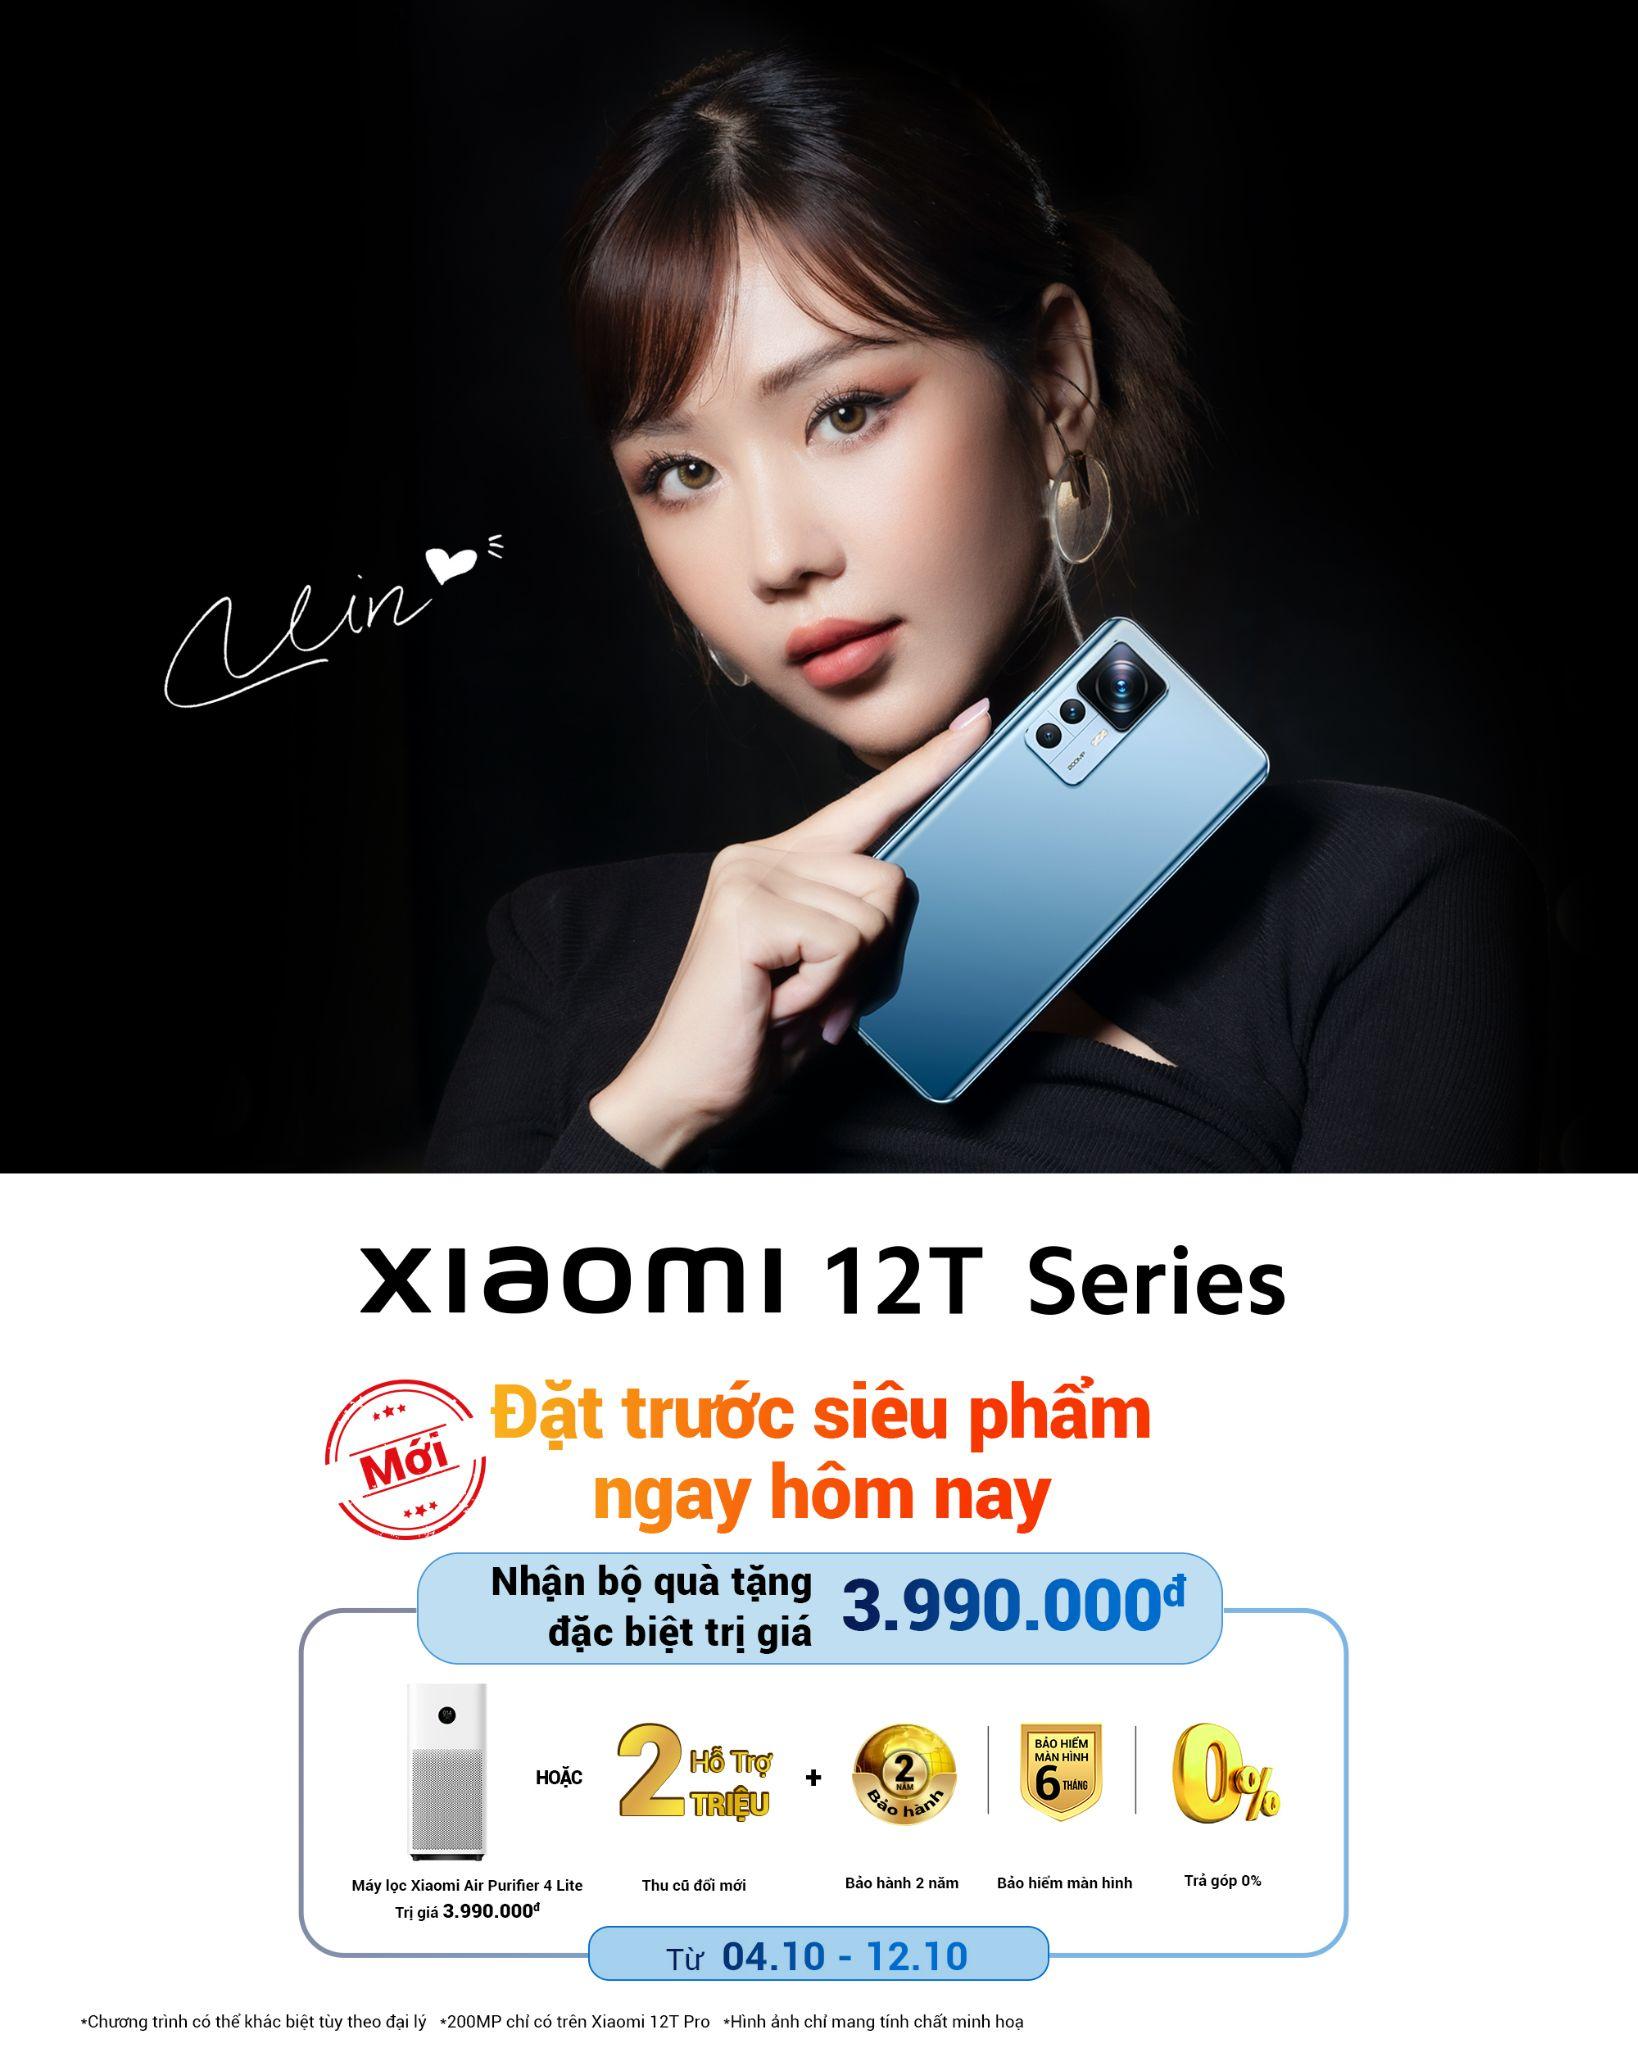 Xiaomi 12T Series sở hữu hệ thống nhiếp ảnh hàng đầu cùng năng lượng đột phá - ảnh 7